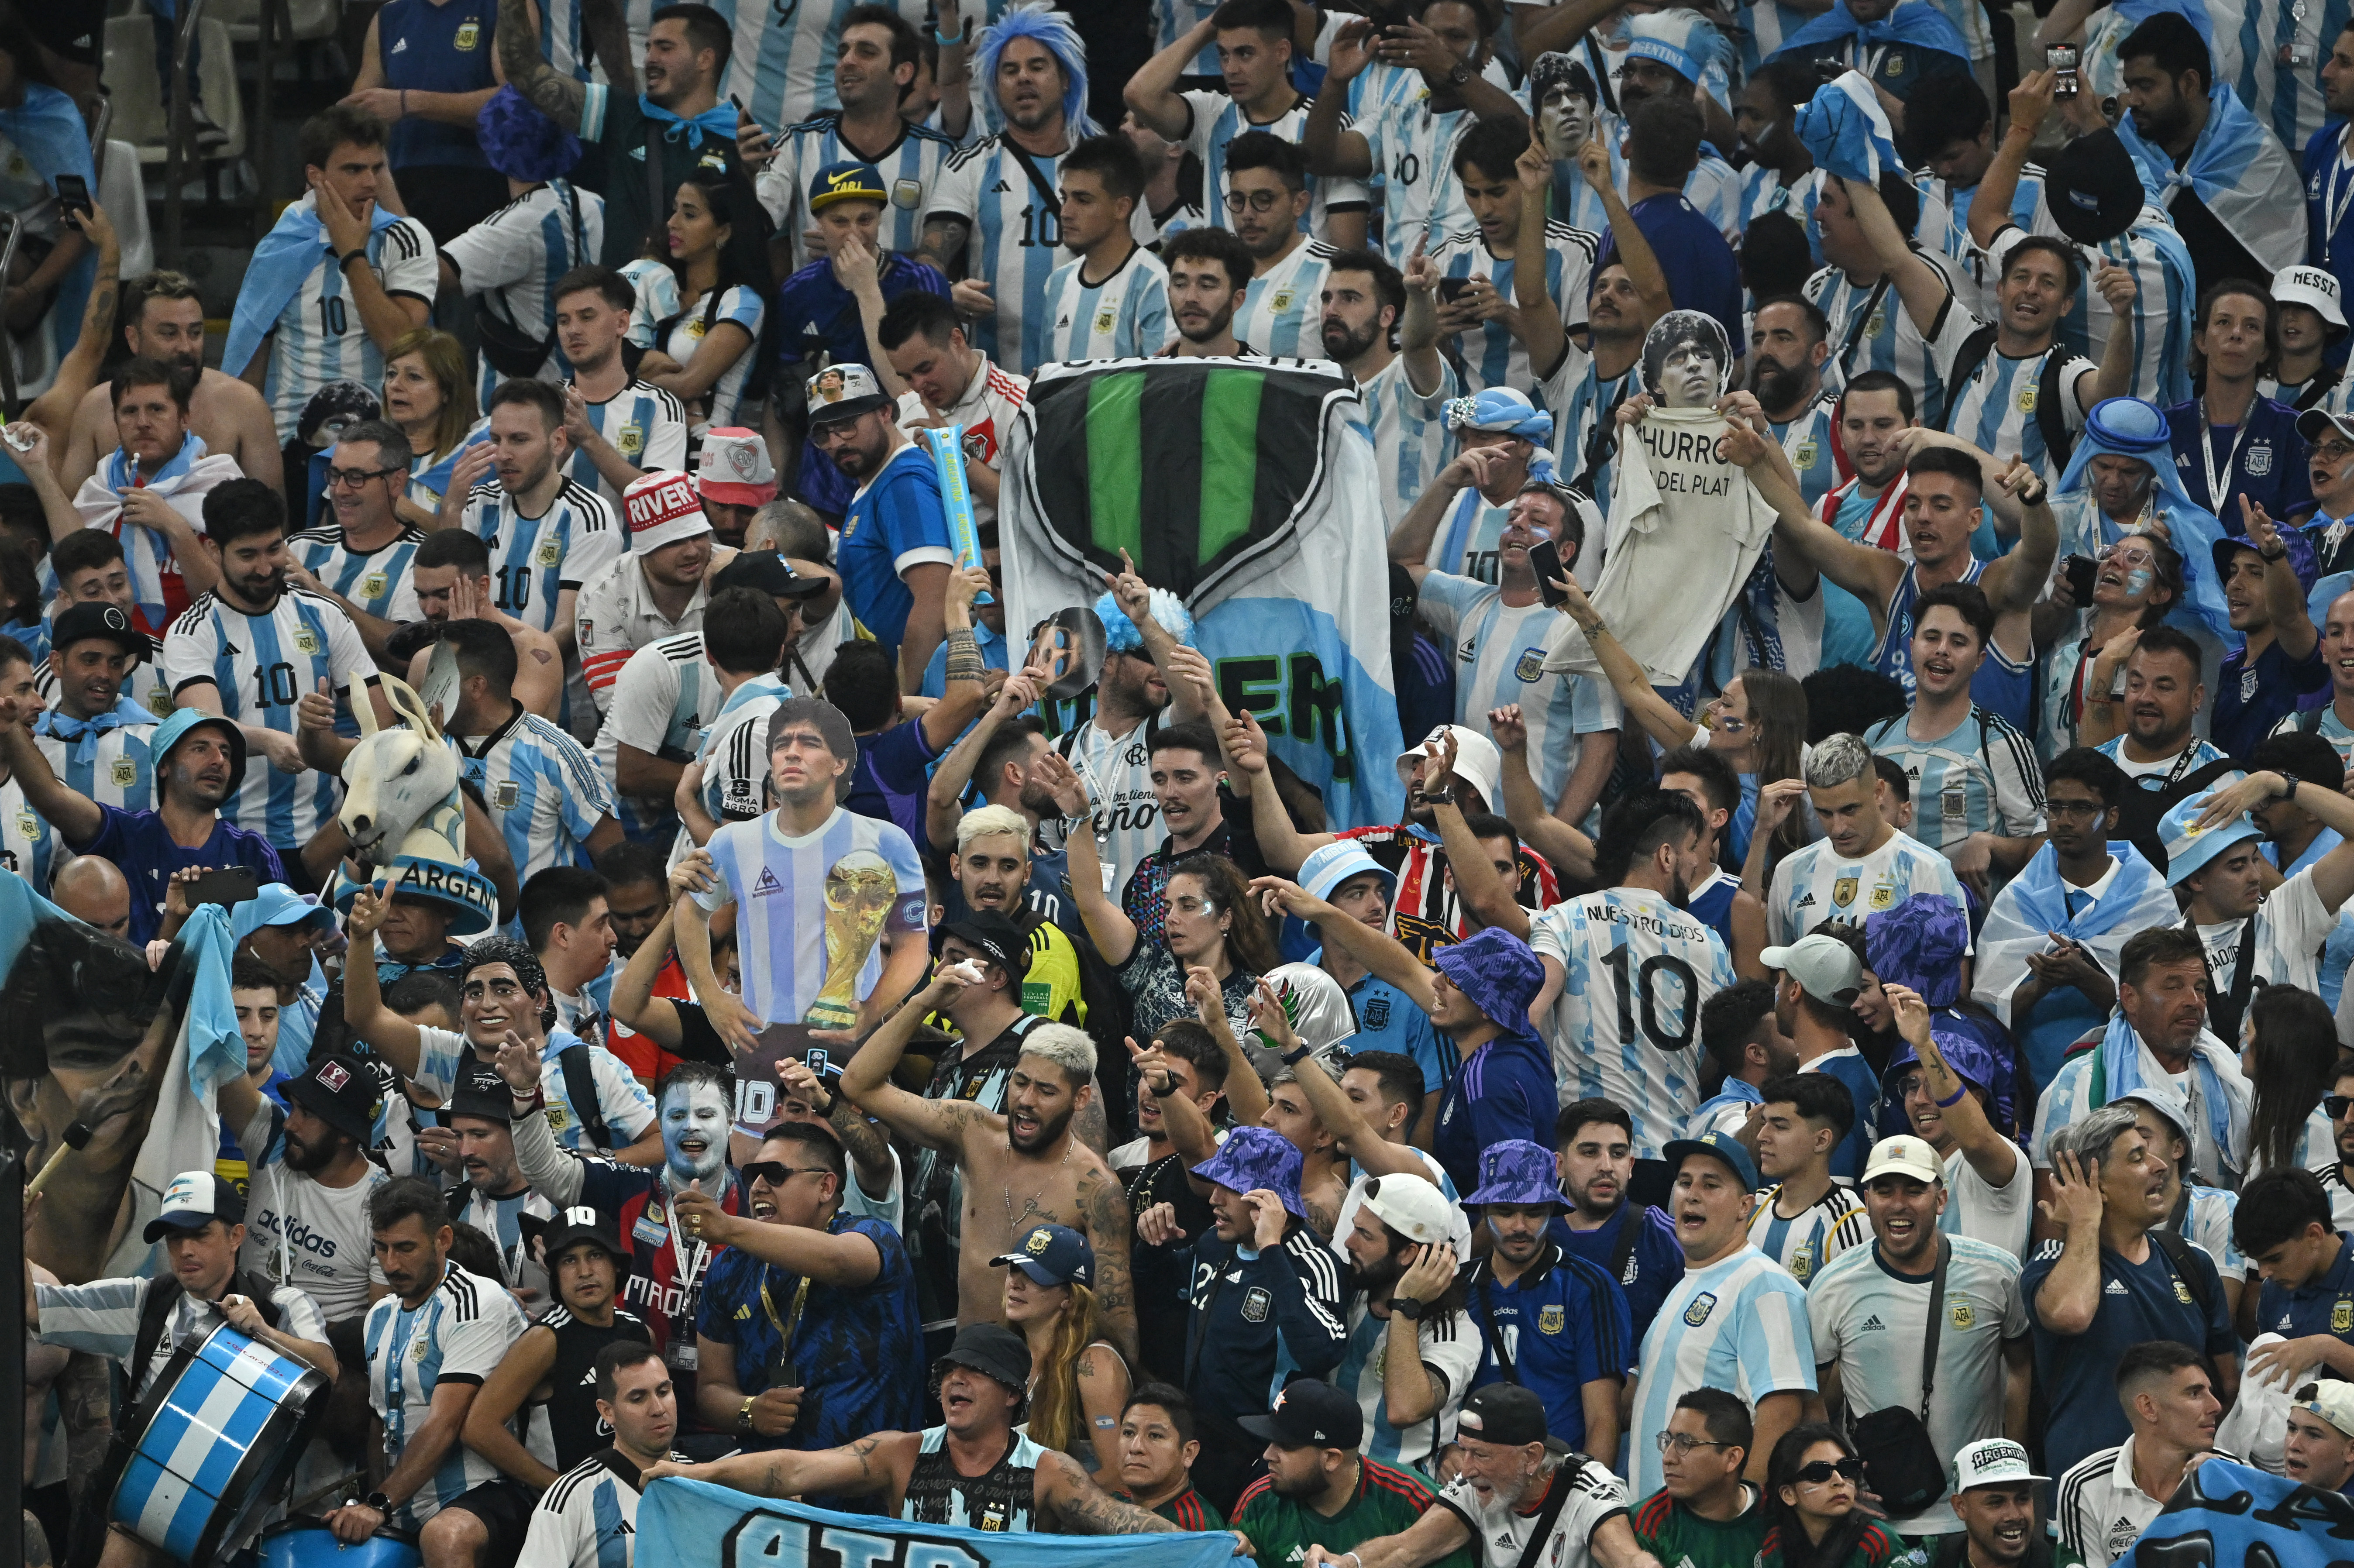 Los argentinos esperan por el primer triunfo de Argentina en la Copa del Mundo (REUTERS/Dylan Martinez)